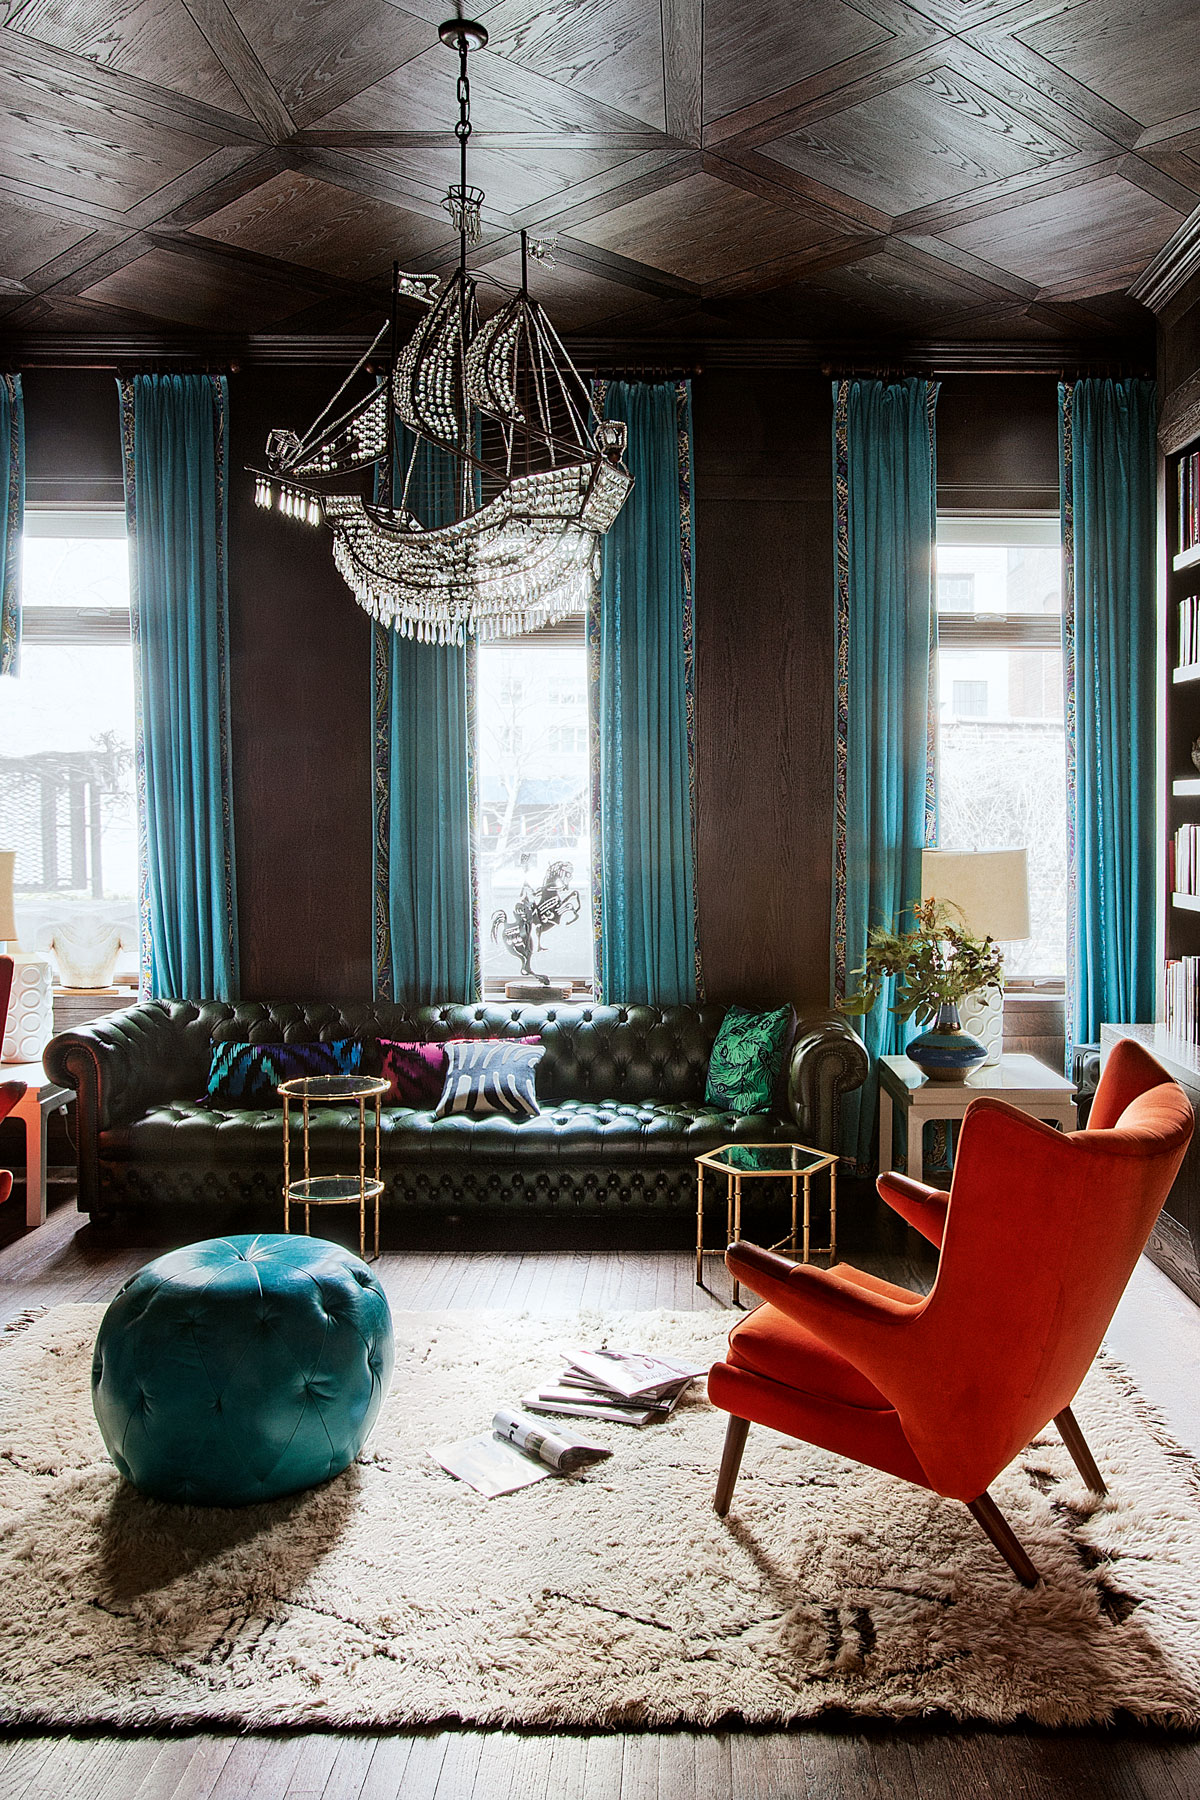 See inside Nanette Lepore's house in New York